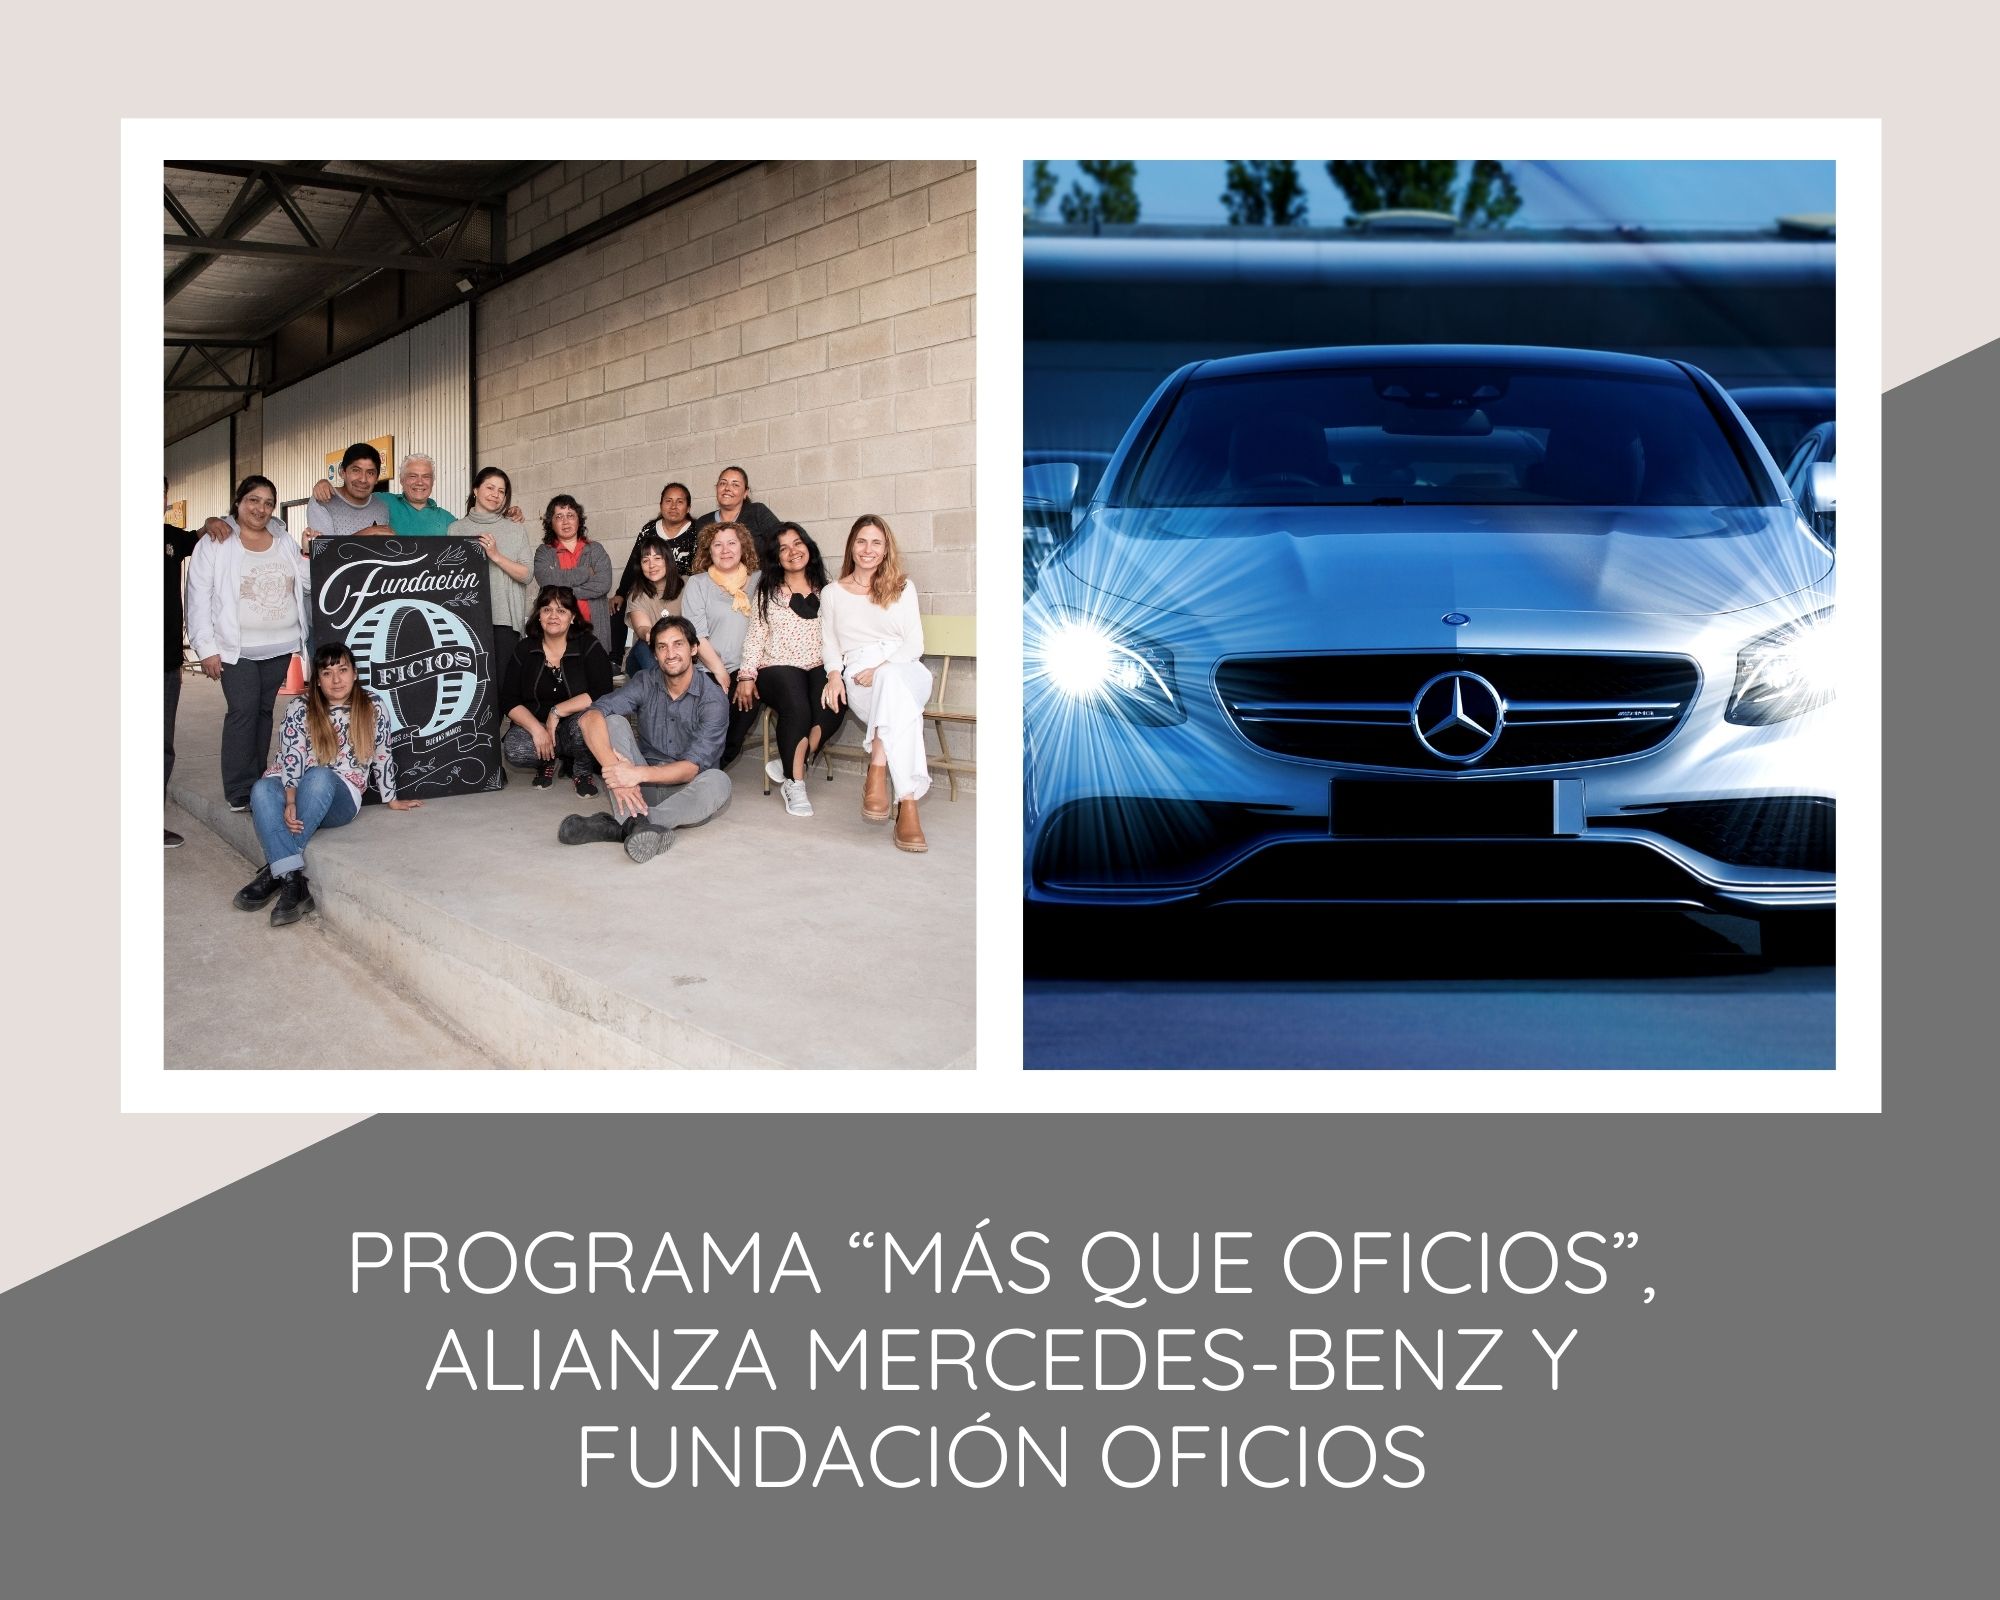 Mercedes-Benz lanzó el Programa educativo “Más que oficios” en Buenos Aires